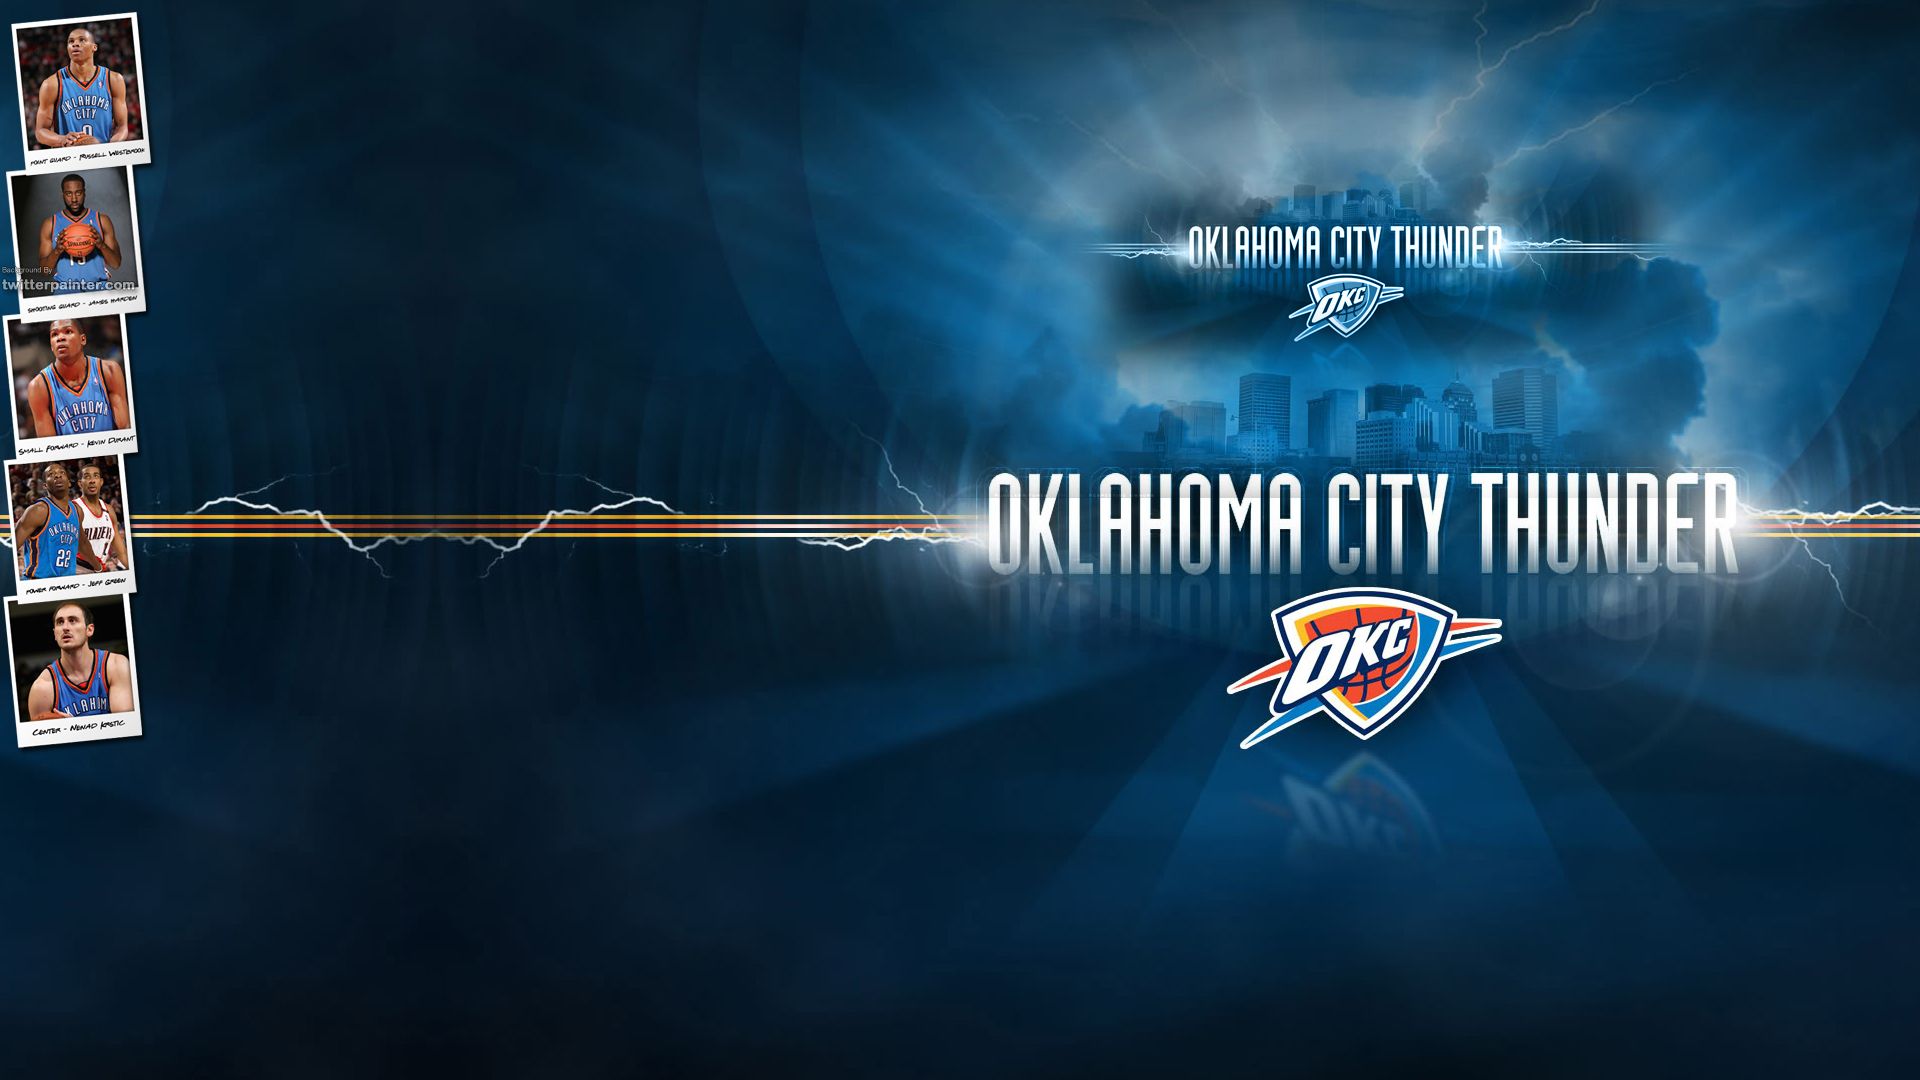 Oklahoma City Thunder Basketball Wallpaper - DreamLoveBackgrounds